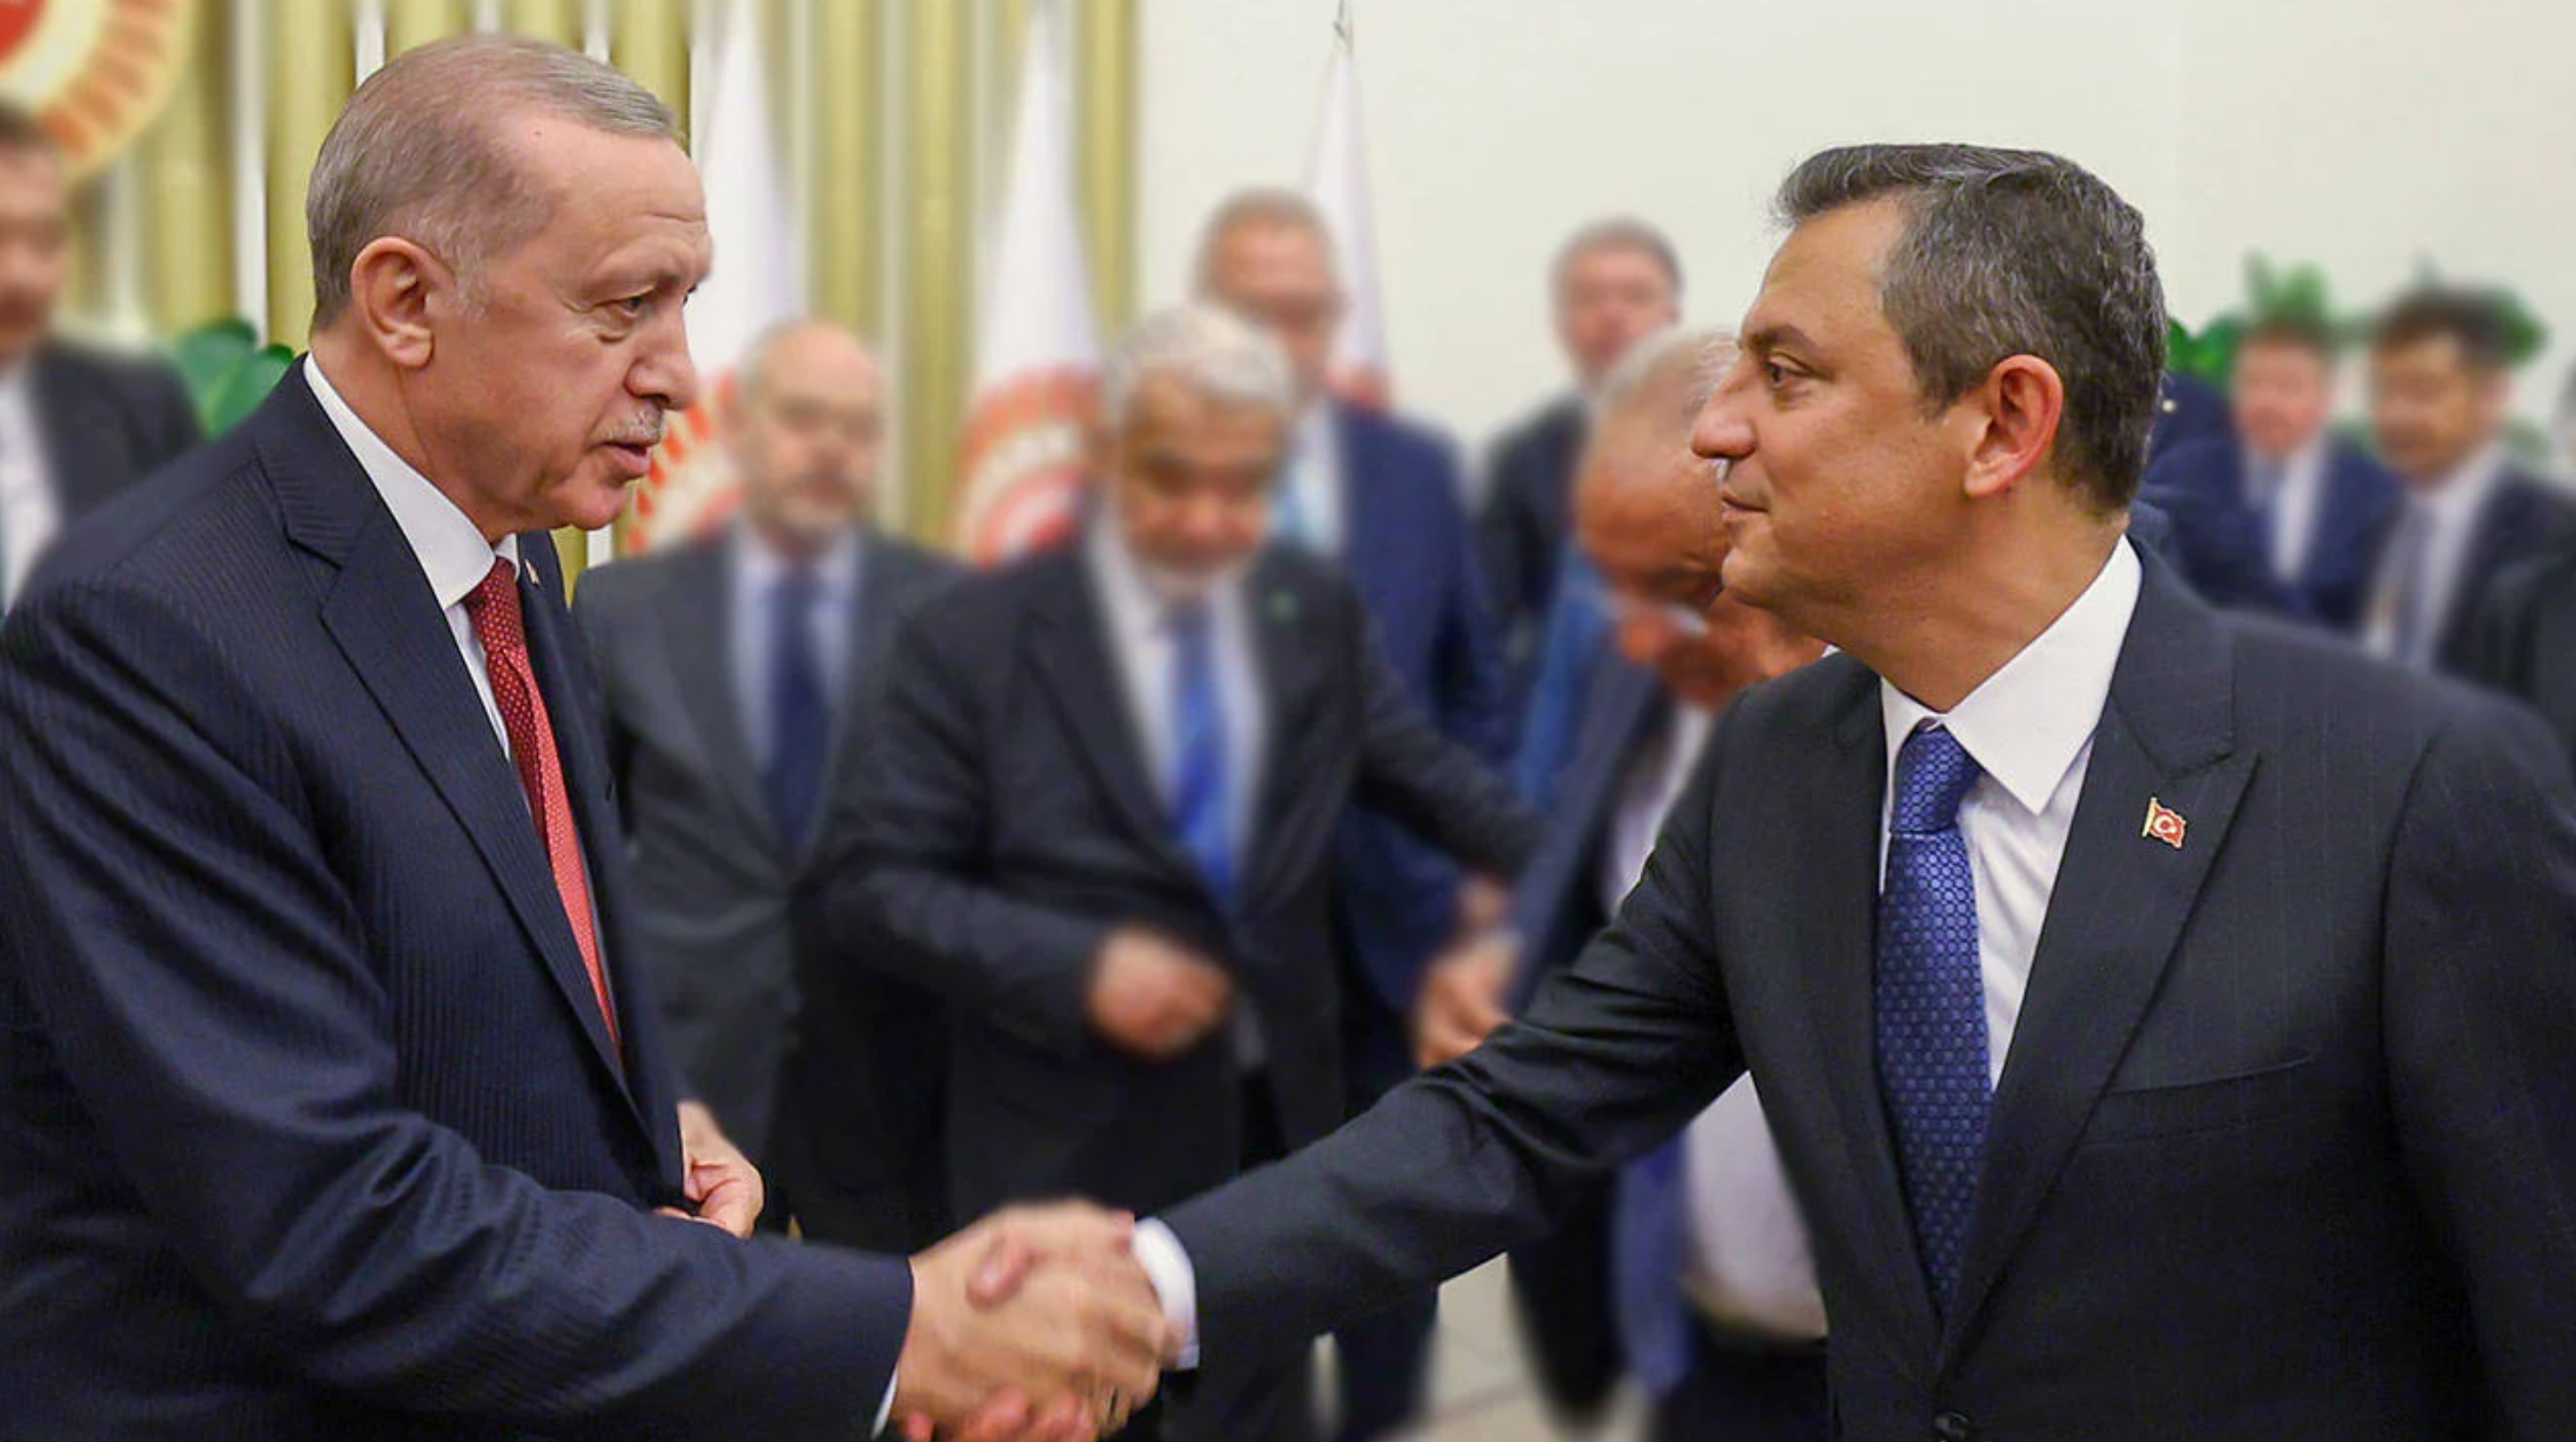 Özel-Erdoğan görüşmesi: “Kibritle oynayan ya kendini yakar ya evini yakar”